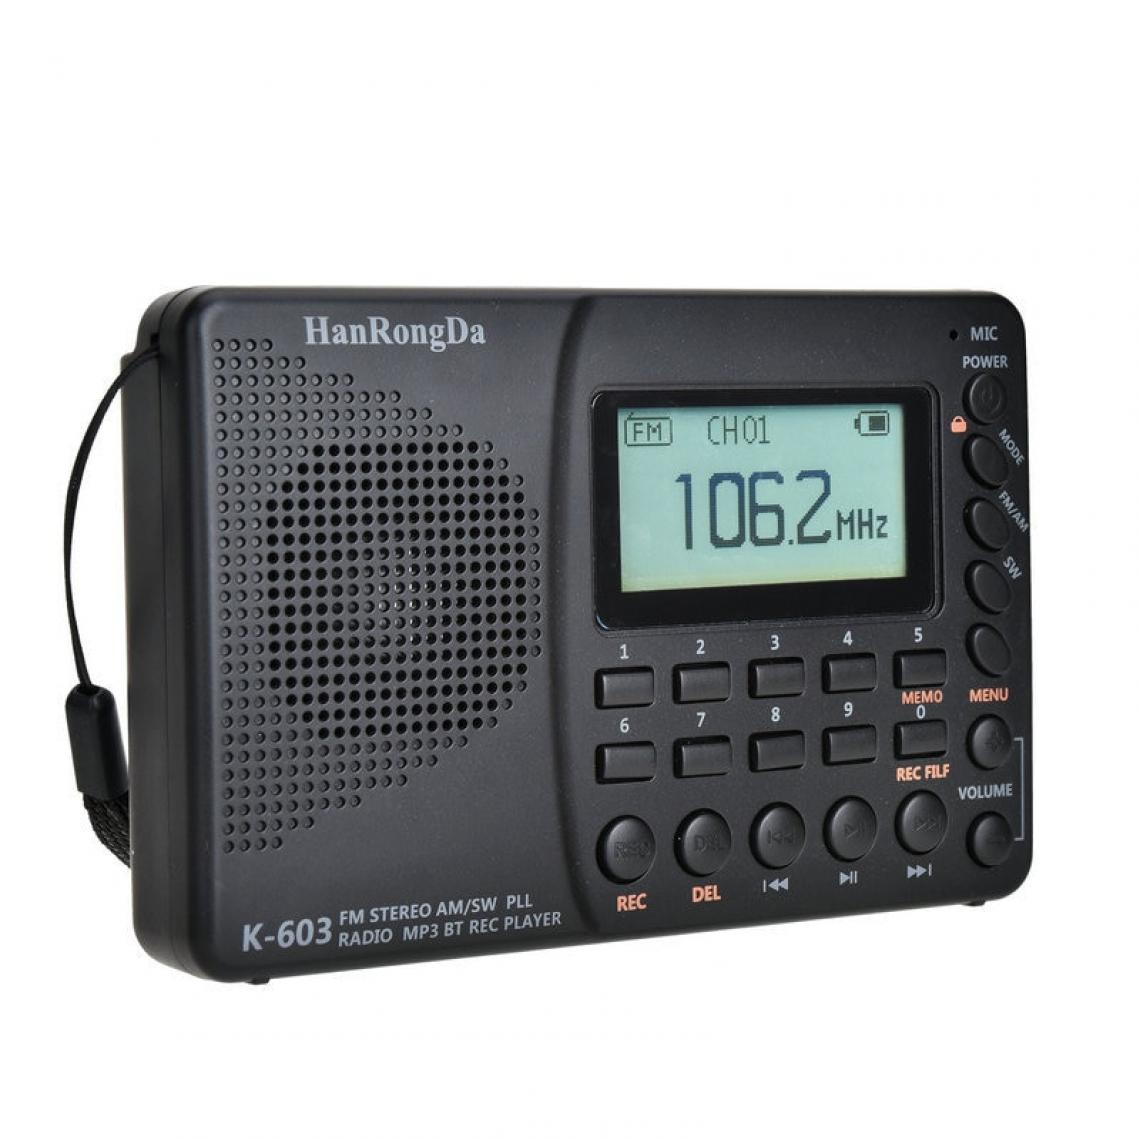 Universal - Radio numérique LCD FM AM SW radio magnétophone haut-parleur Bluetooth interne batterie rechargeable support carte mémoire(Le noir) - Radio